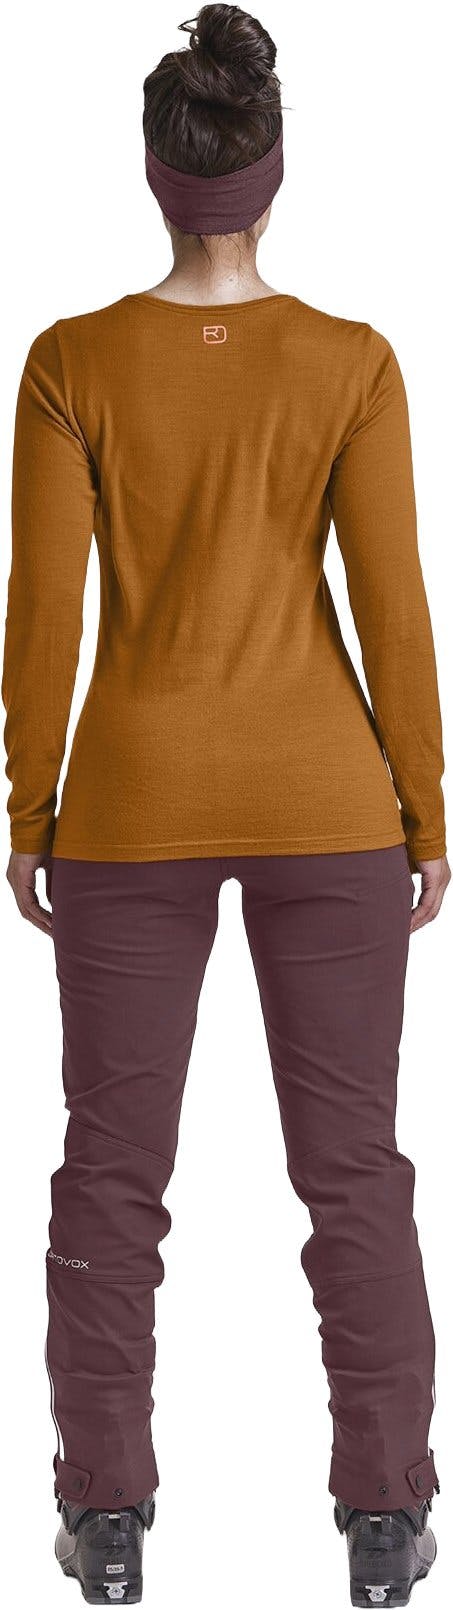 Numéro de l'image de la galerie de produits 3 pour le produit T-shirt à manches longues 185 Merino Tangram - Femme